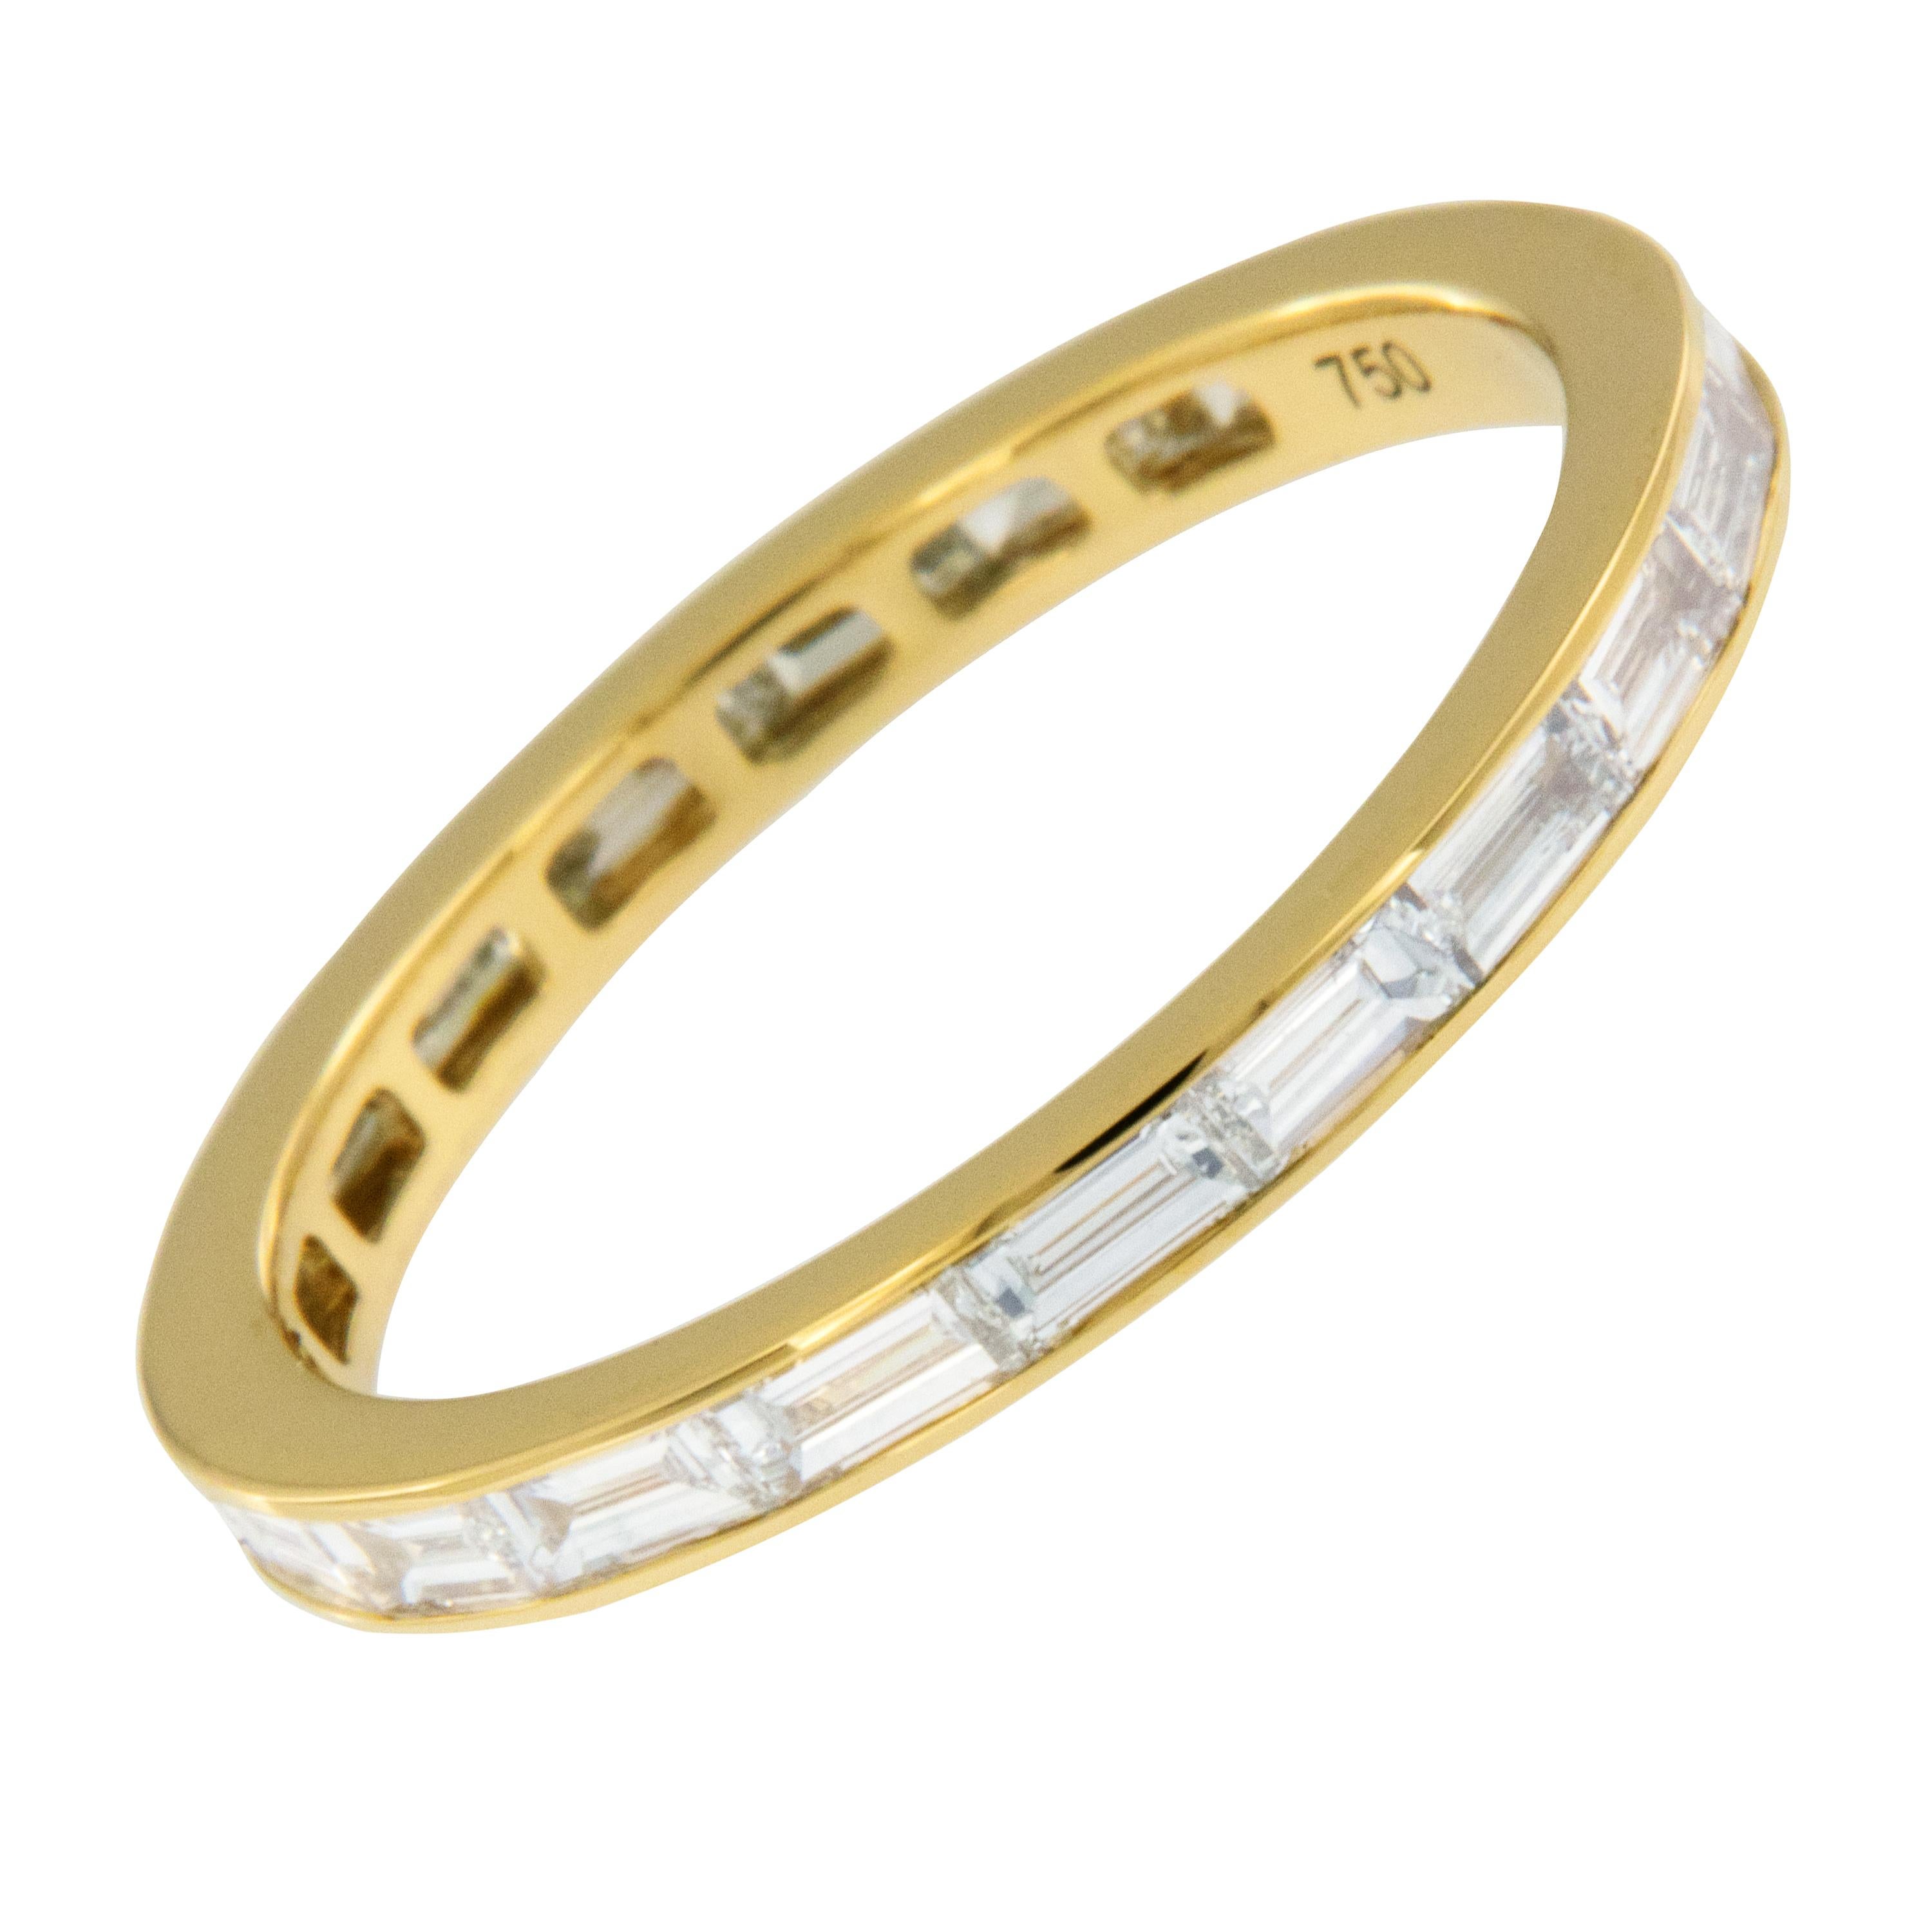 Réalisé de main de maître en or jaune royal 18 carats, cet anneau éternel intemporel en diamant taille baguette est un complément parfait à une bague de fiançailles existante, à porter seul ou à superposer ! 20 diamants baguettes de qualité